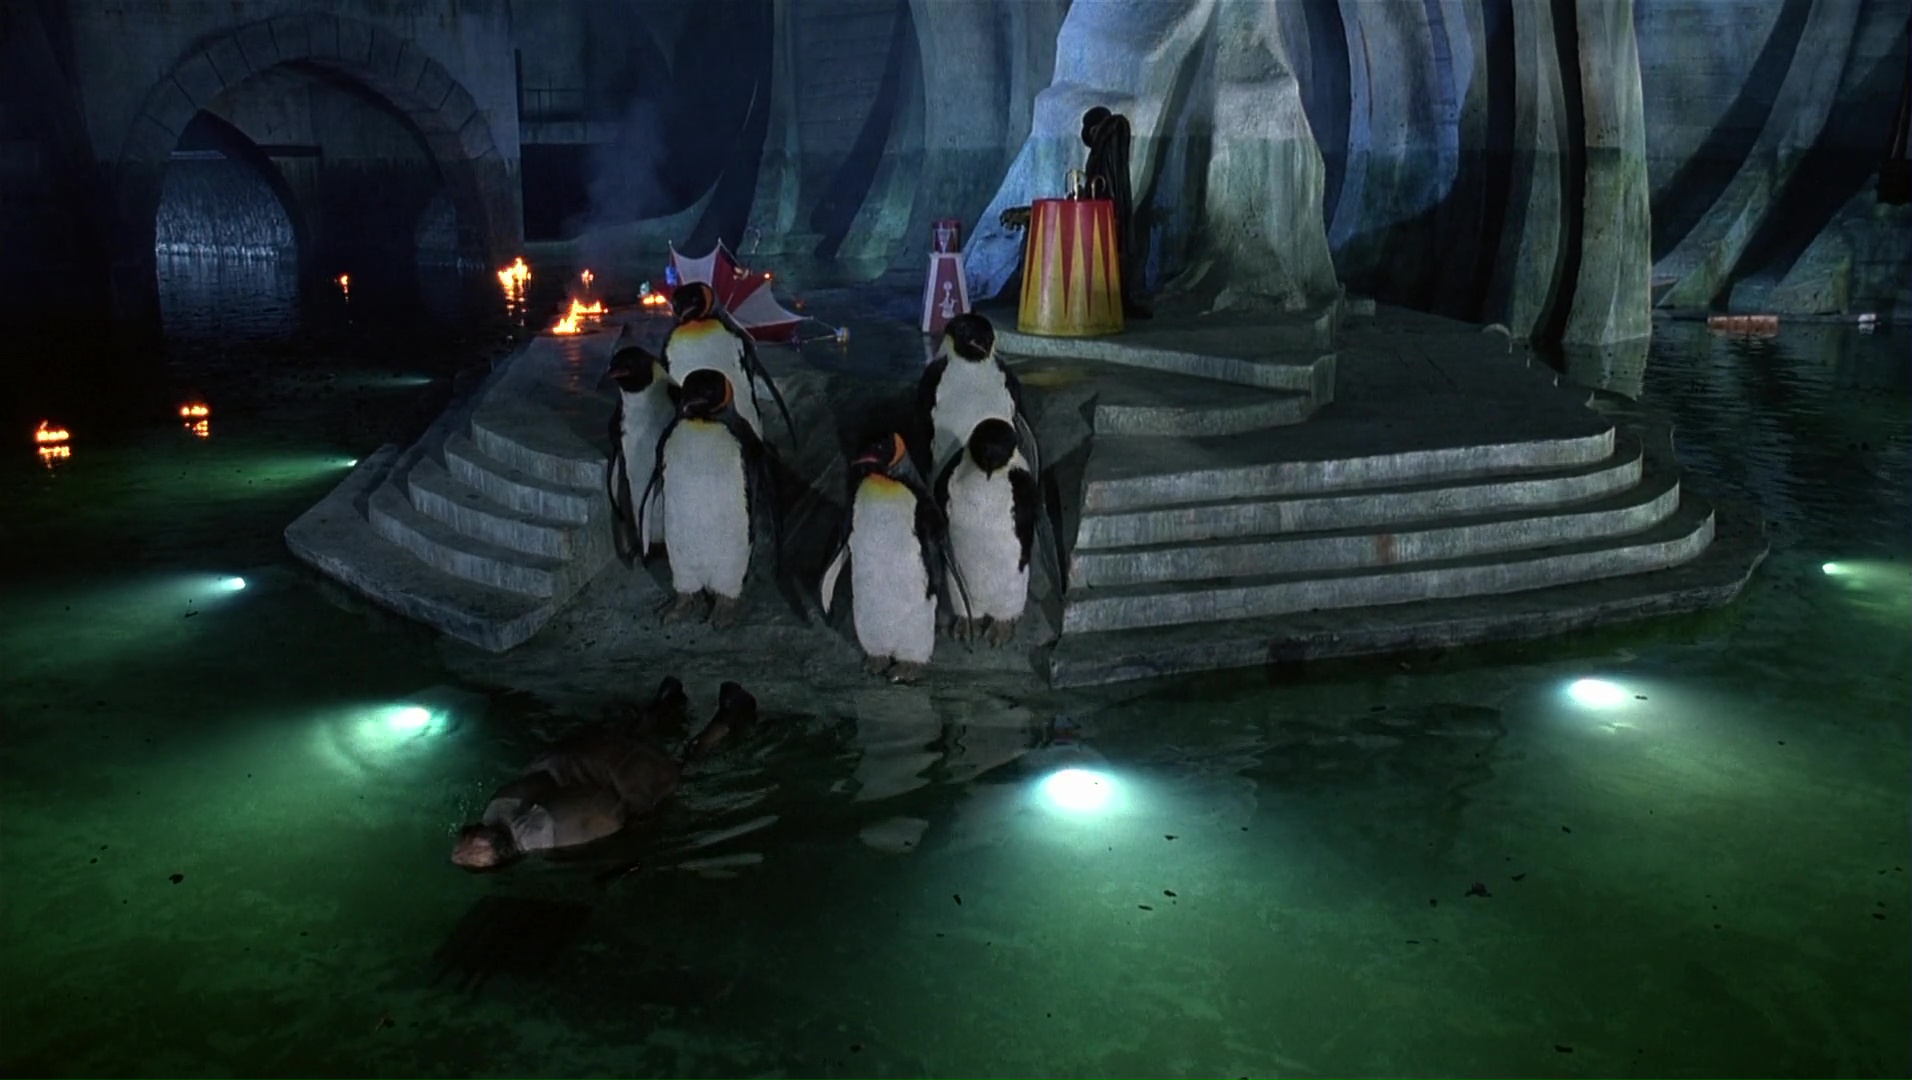 Penguin's Lair, Batman Videogames Wiki